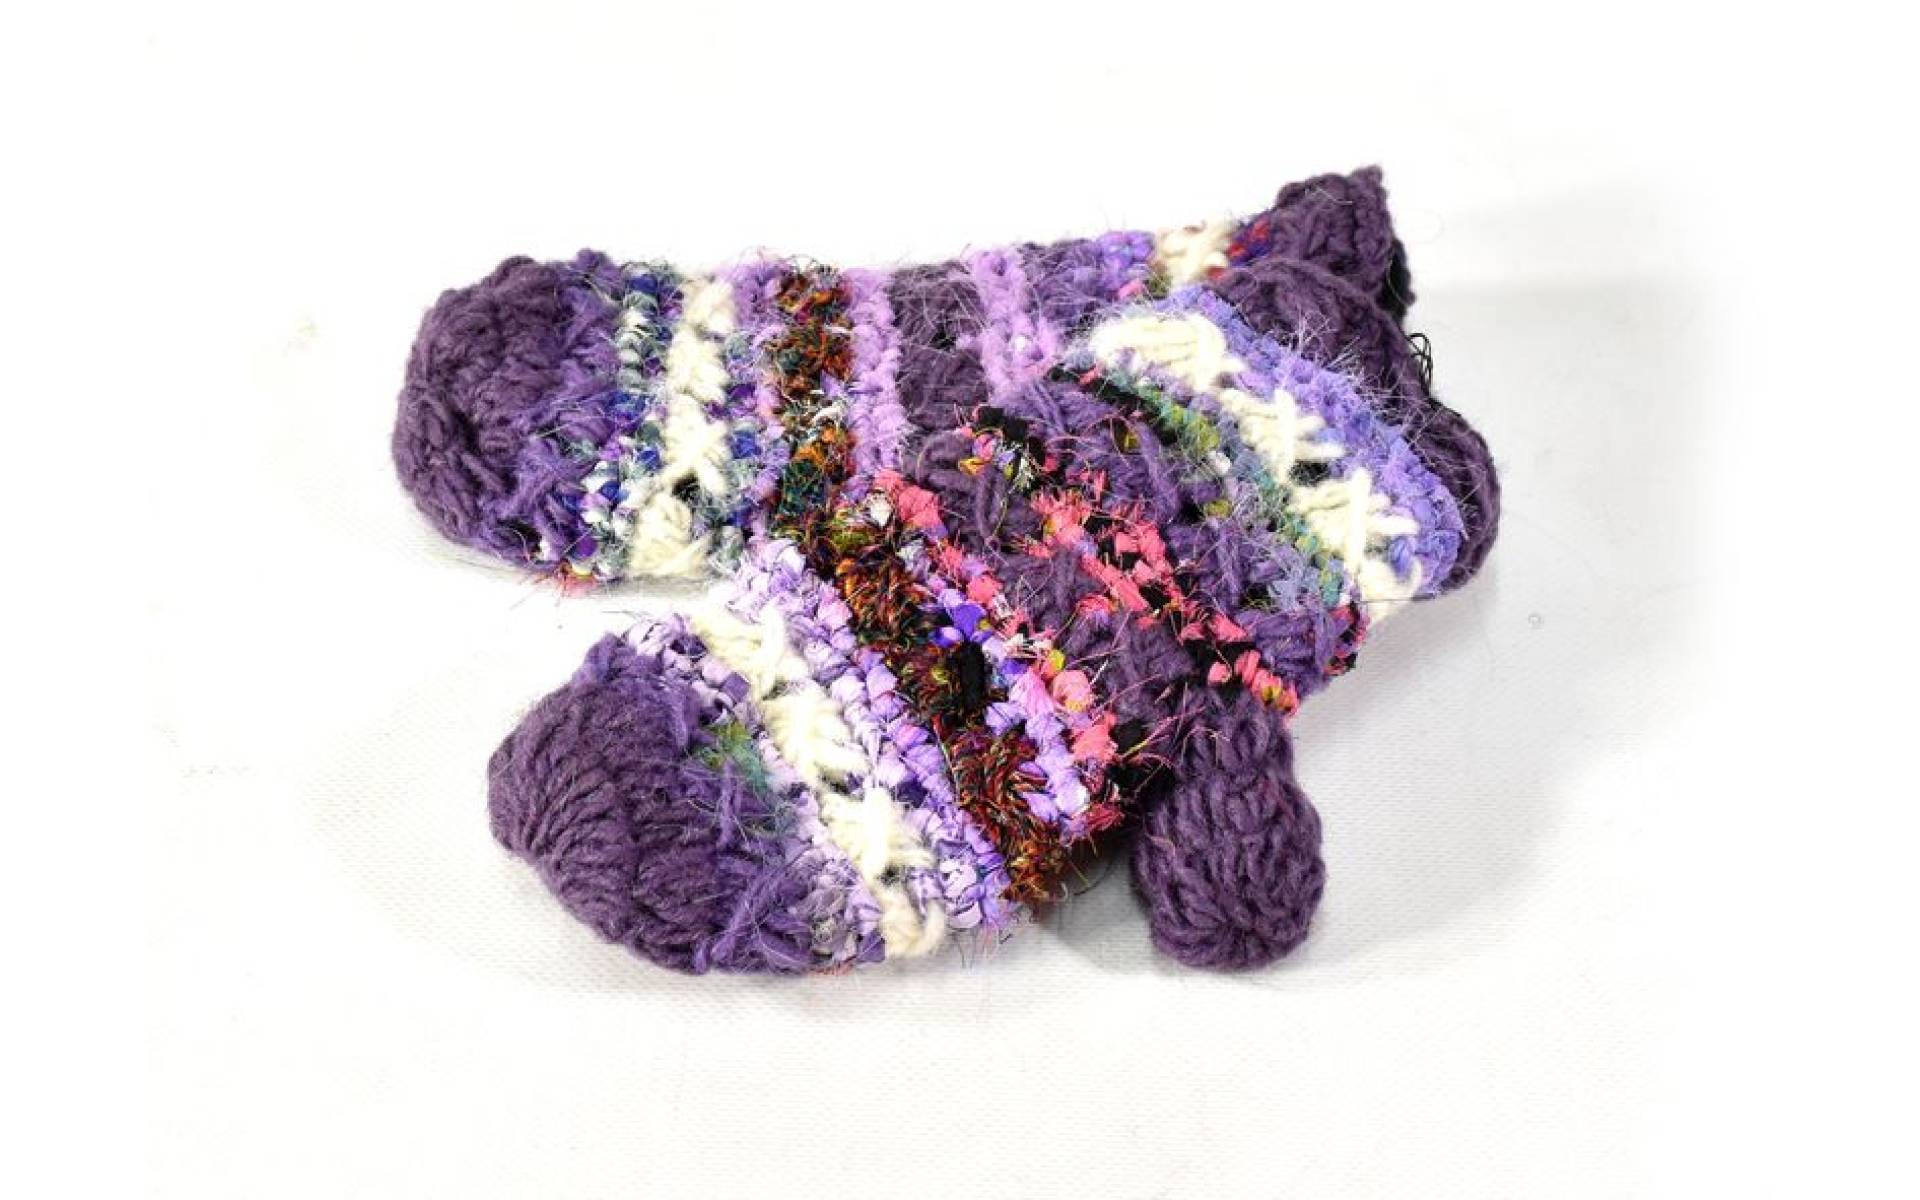 Fialové vlnené rukavice palčiaky, patchwork (vlna, bavlna, hodváb)